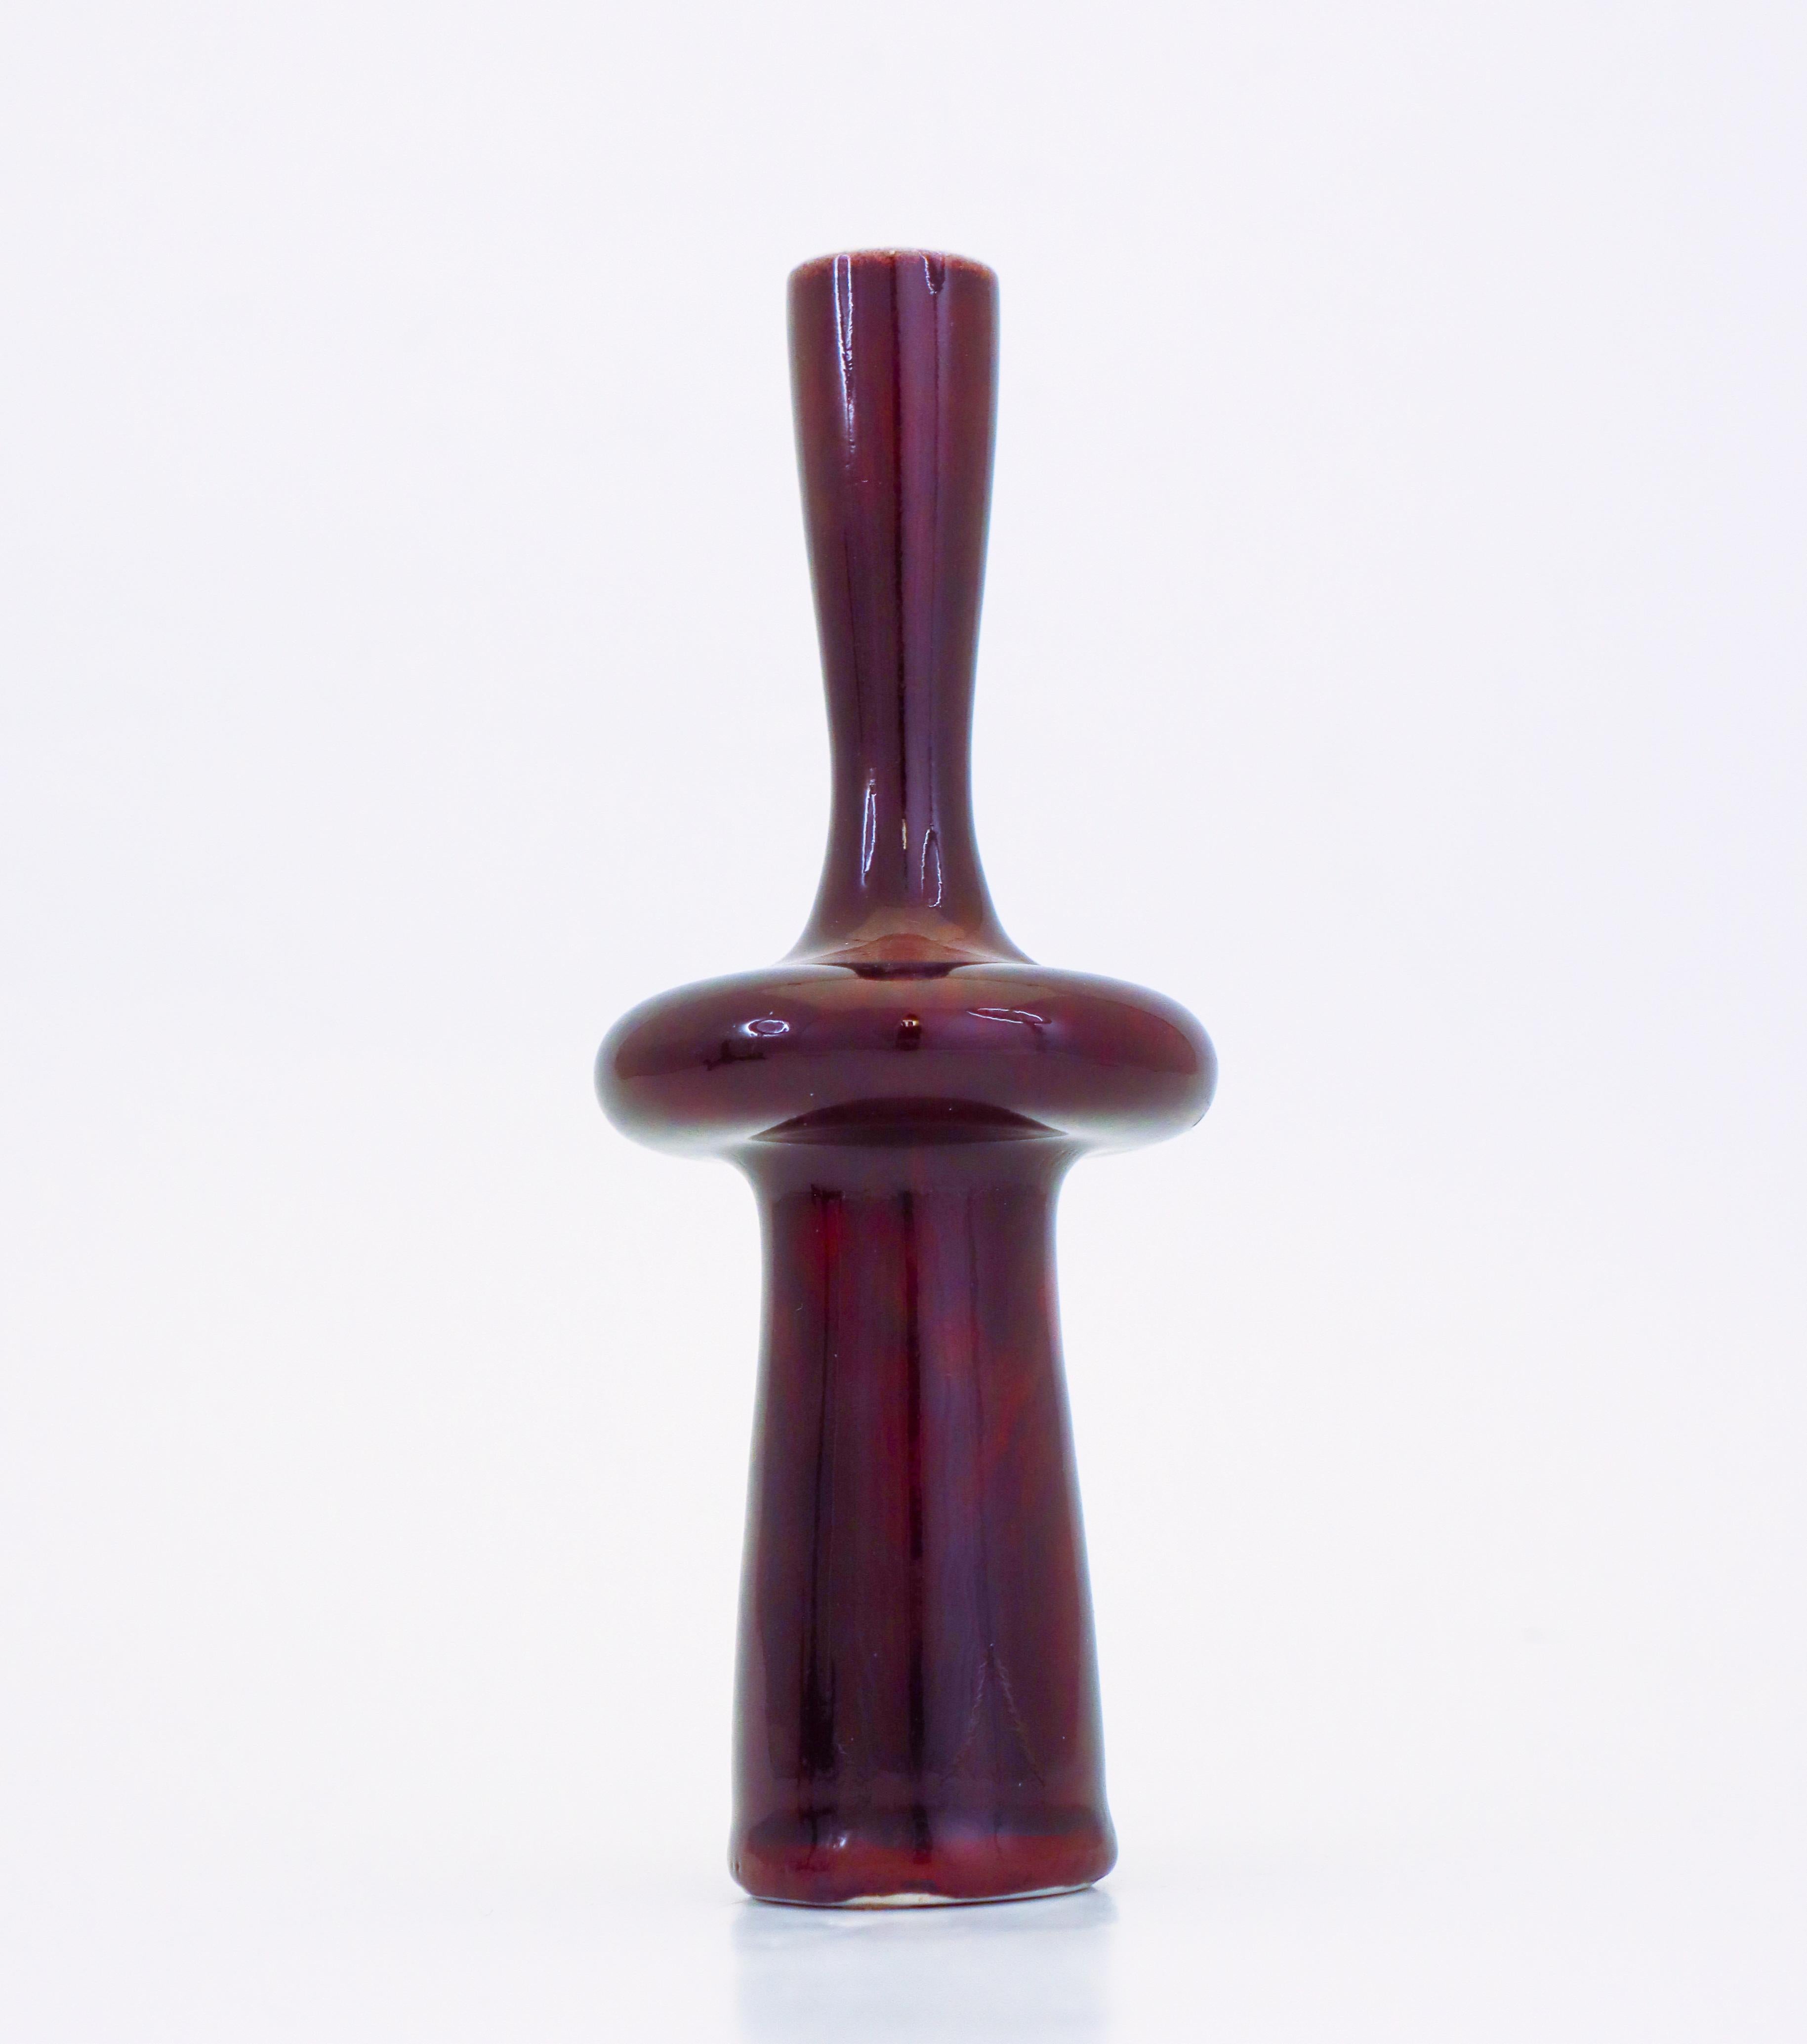 Eine ochsenblutfarbene Porzellanvase mit einer schönen glänzenden Glasur, entworfen von Stig Lindberg bei Gustavsberg. Die Vase ist 18,5 cm hoch und hat einen Durchmesser von 7,5 cm. Es ist in einem ausgezeichneten Zustand, abgesehen von einigen